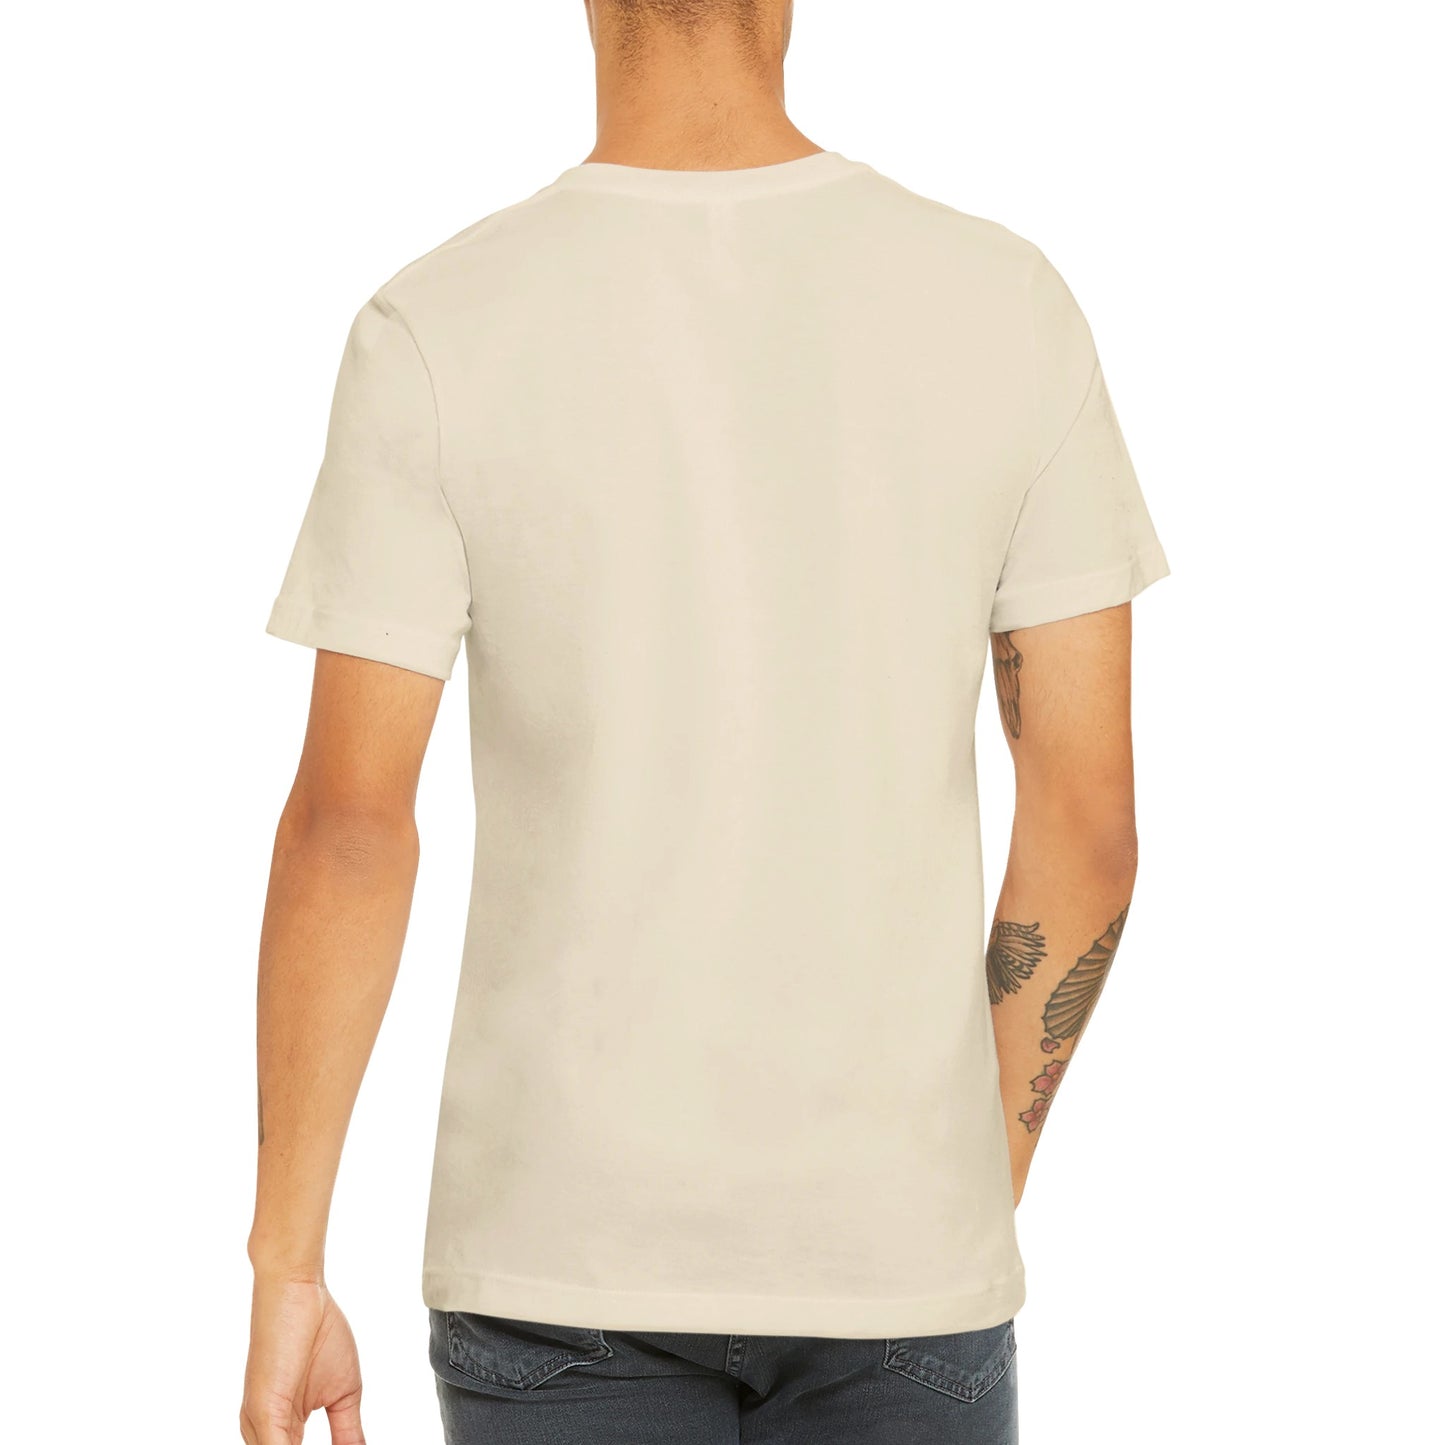 Budget Unisex Crewneck T-shirt/I've-Got-Your-Back